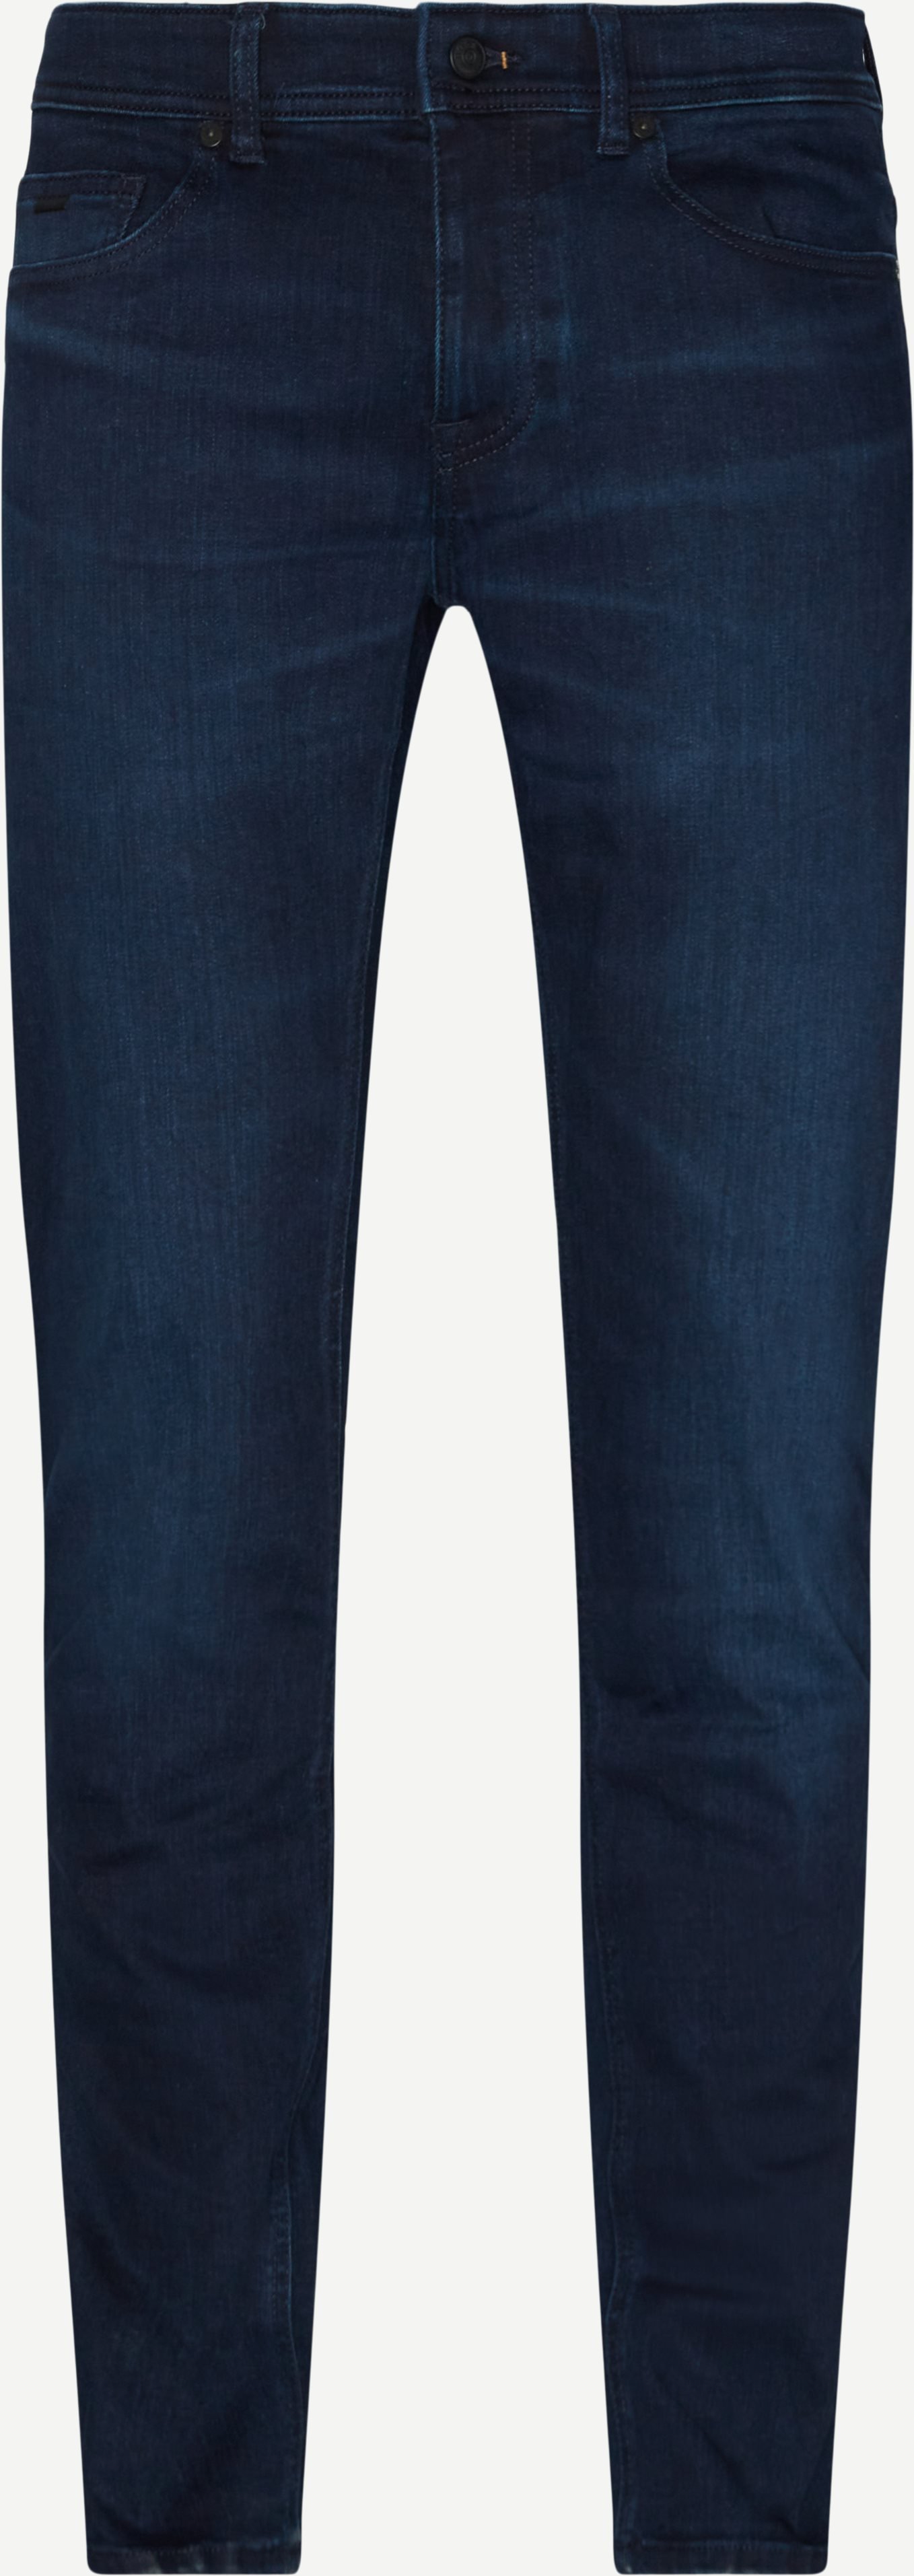 Delaware BC-LP Represent Jeans - Jeans - Slim fit - Denim